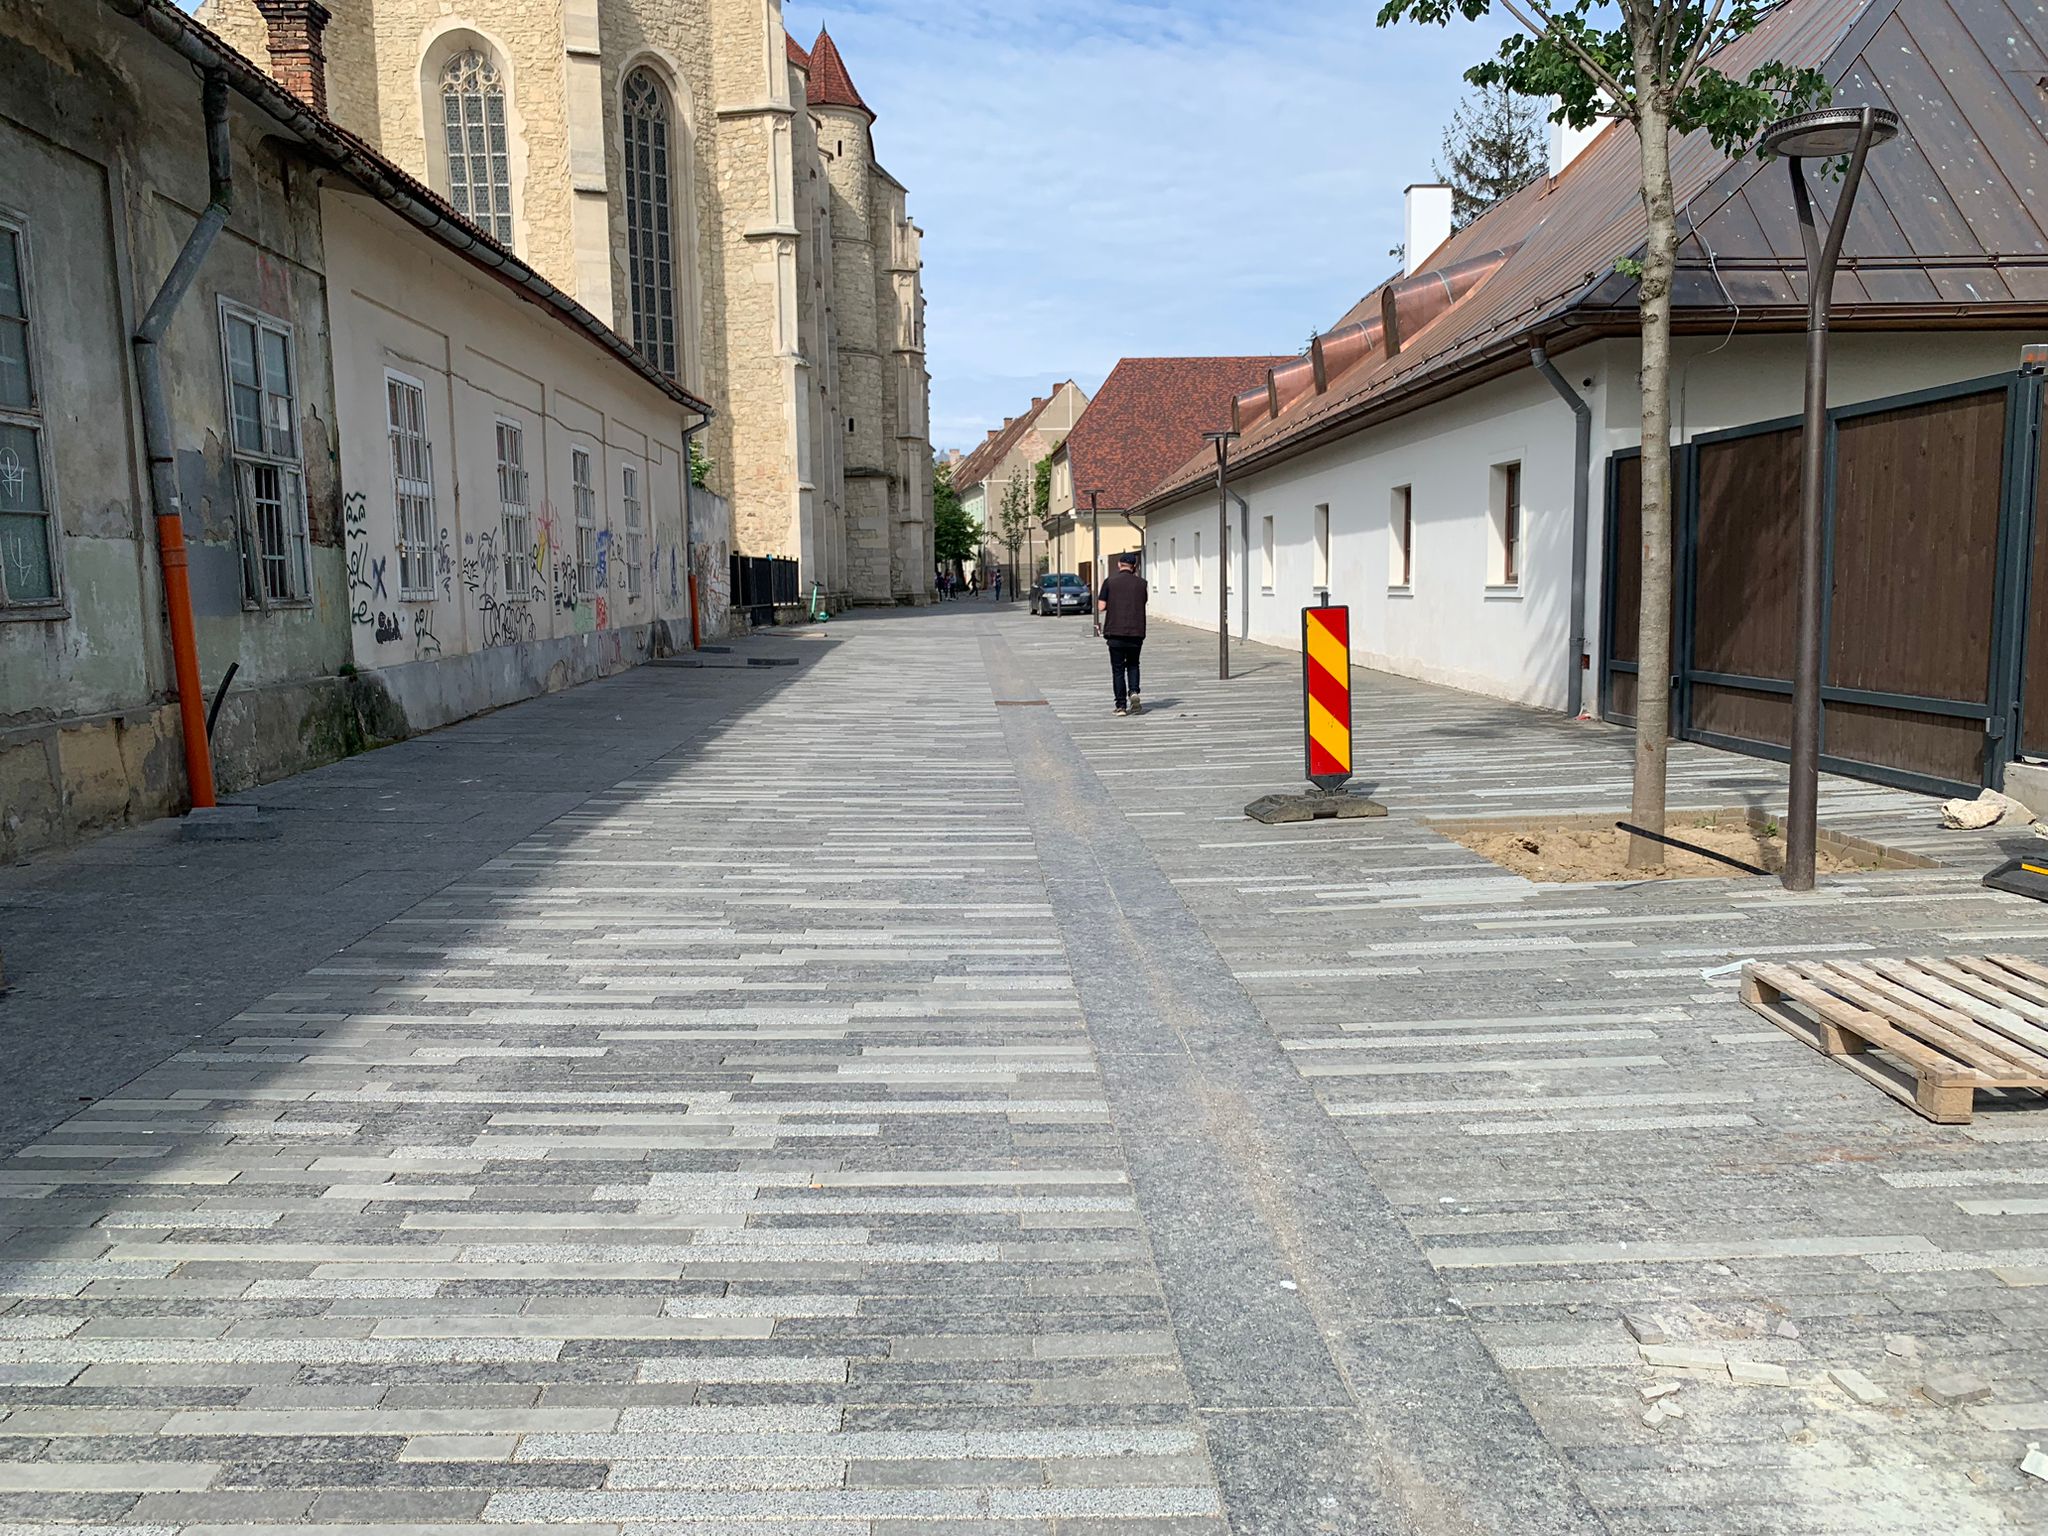 Orașele europene caută să-și înverzească centrul, dar Clujul rămâne în era betoanelor. Deputat clujean: ”Așa arătau soluțiile lor acum 20 de ani”